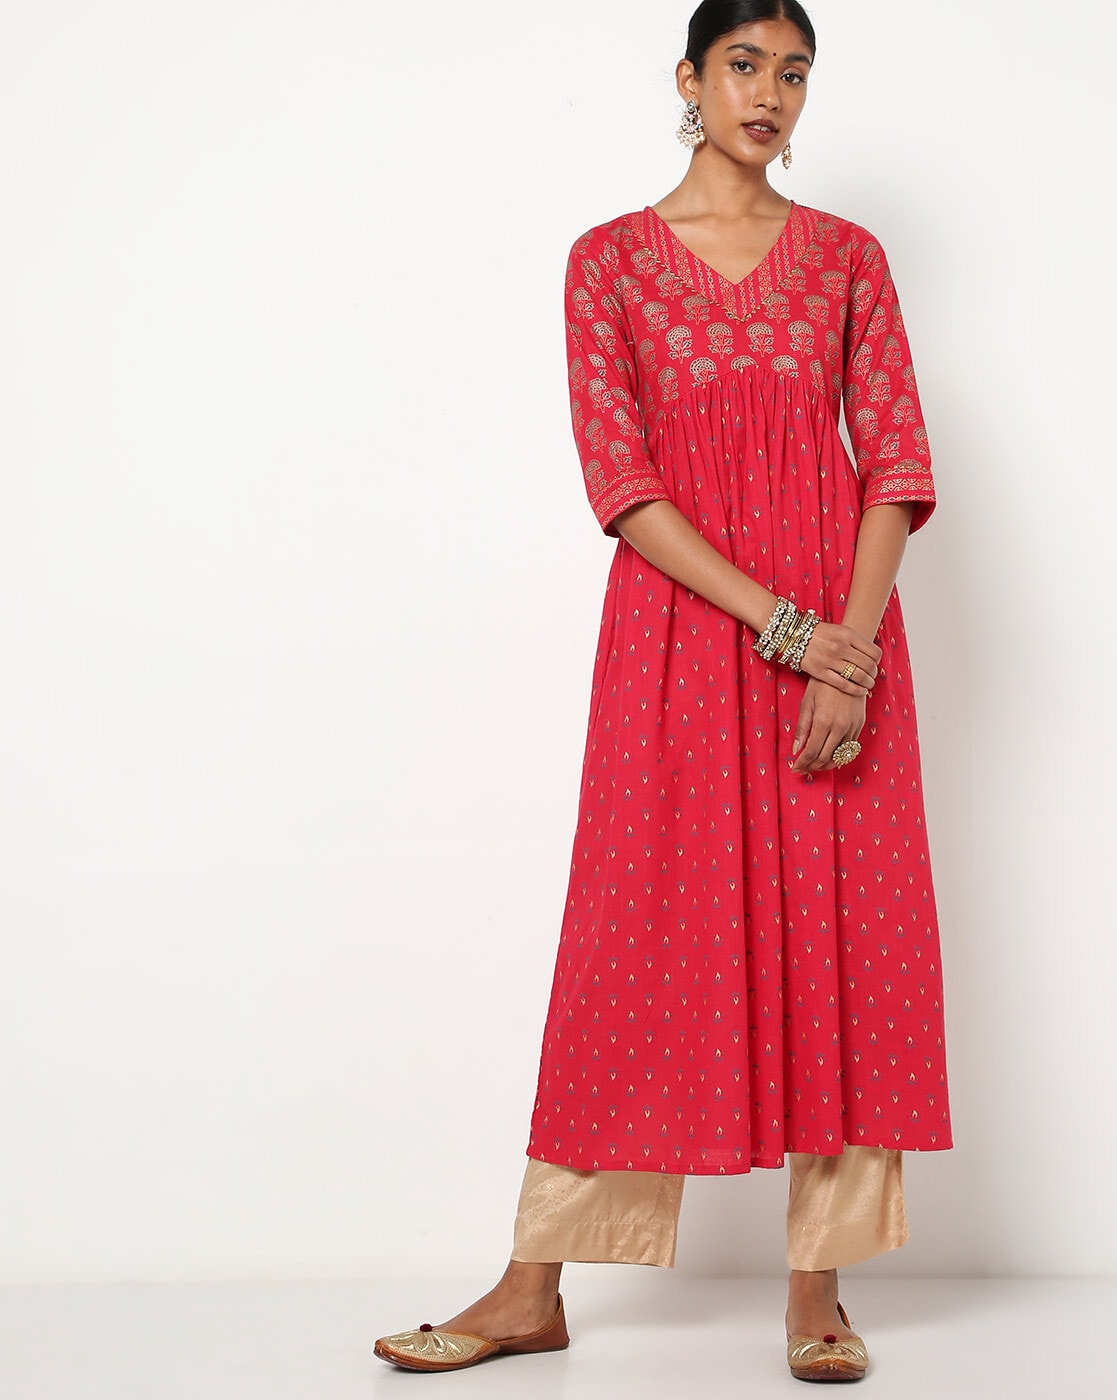 Bright Red Viscose Rayon Stylish Casual Wear Kurti Online FABKU20802  FABANZA UK